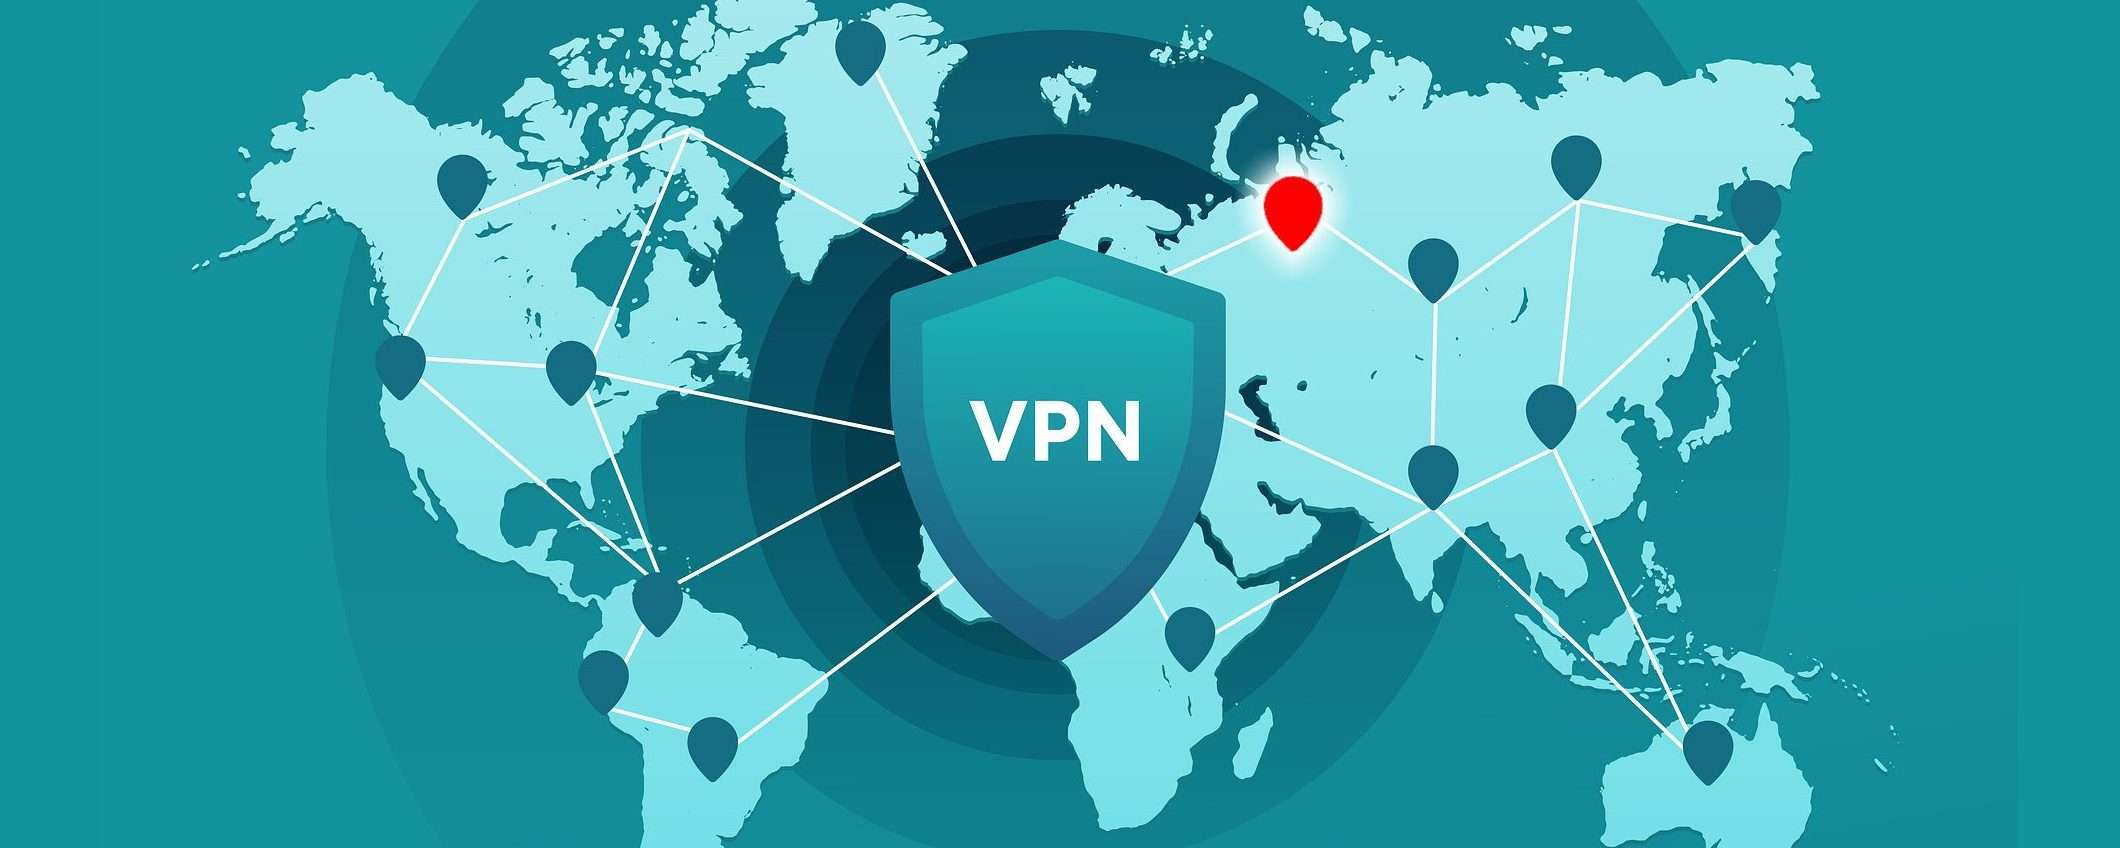 VPN e verità, oltre la narrativa di guerra e la propaganda